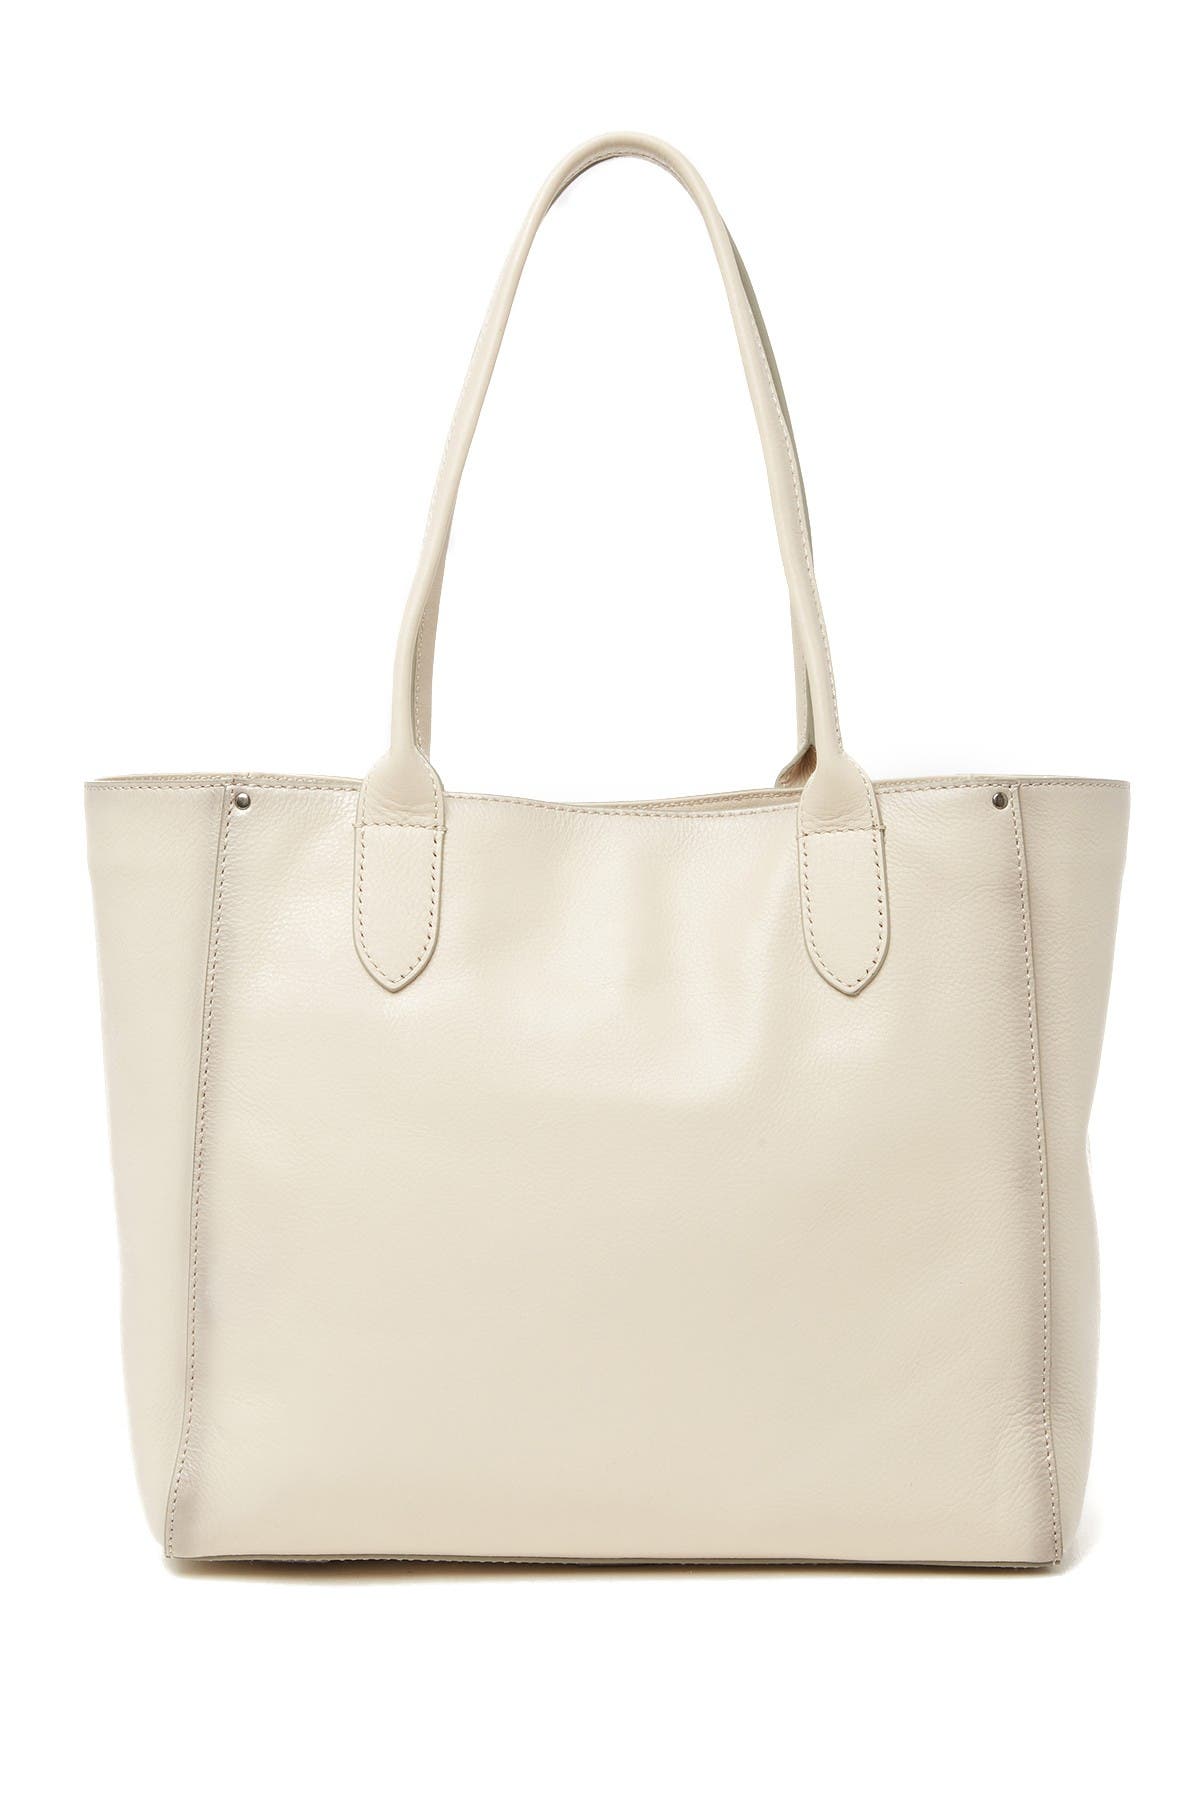 Frye | Olivia Leather Tote Bag | Nordstrom Rack